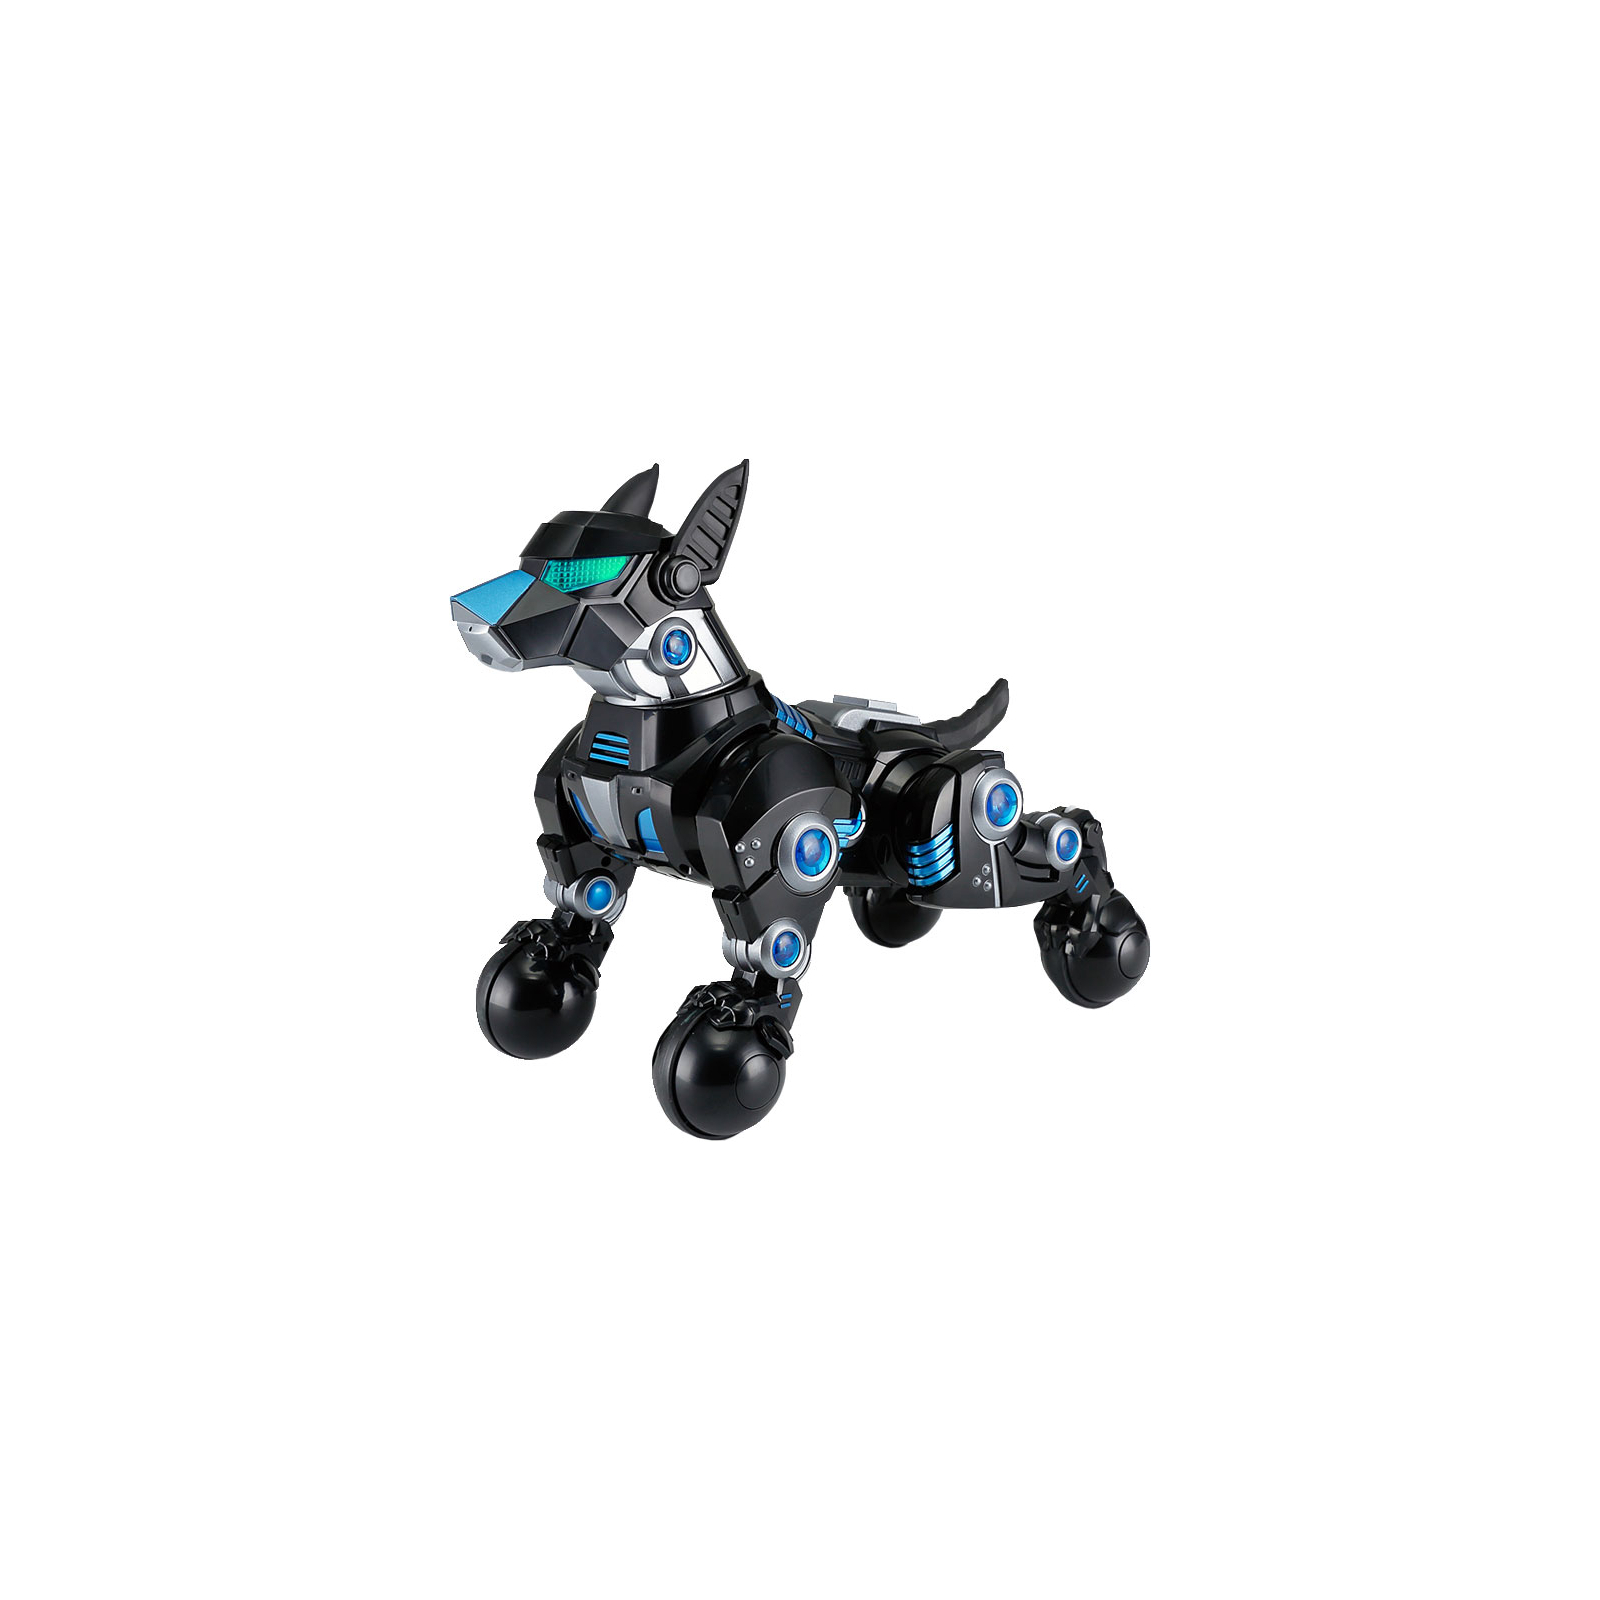 Интерактивная игрушка Rastar Робот DOGO пес черный (77960 black)